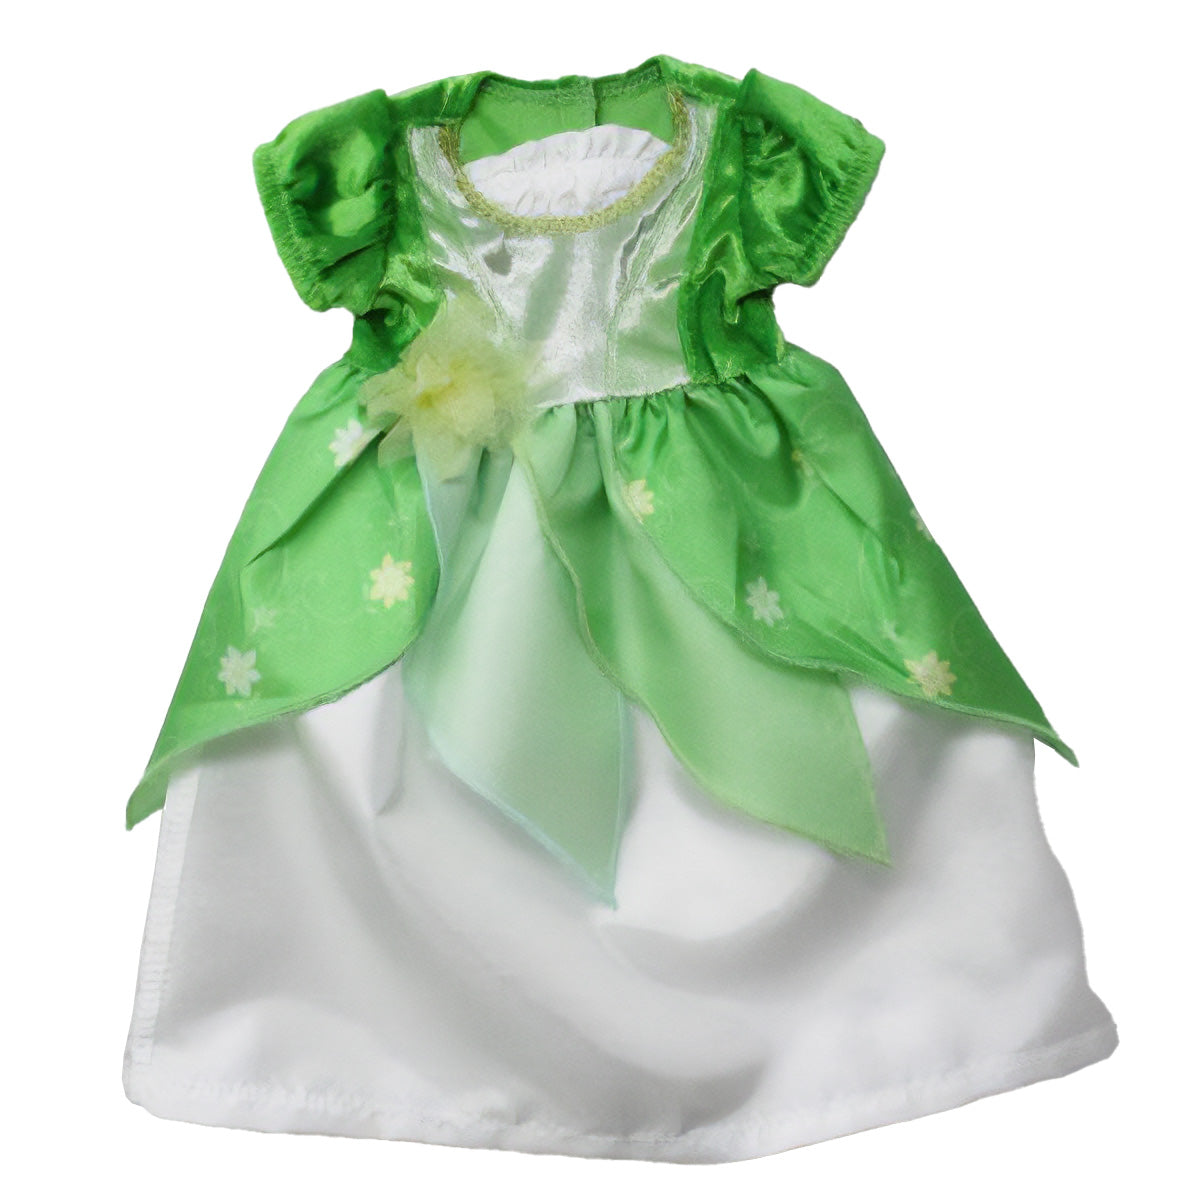 Lil Lily Pad Princess Green Dress Fits 16-20"